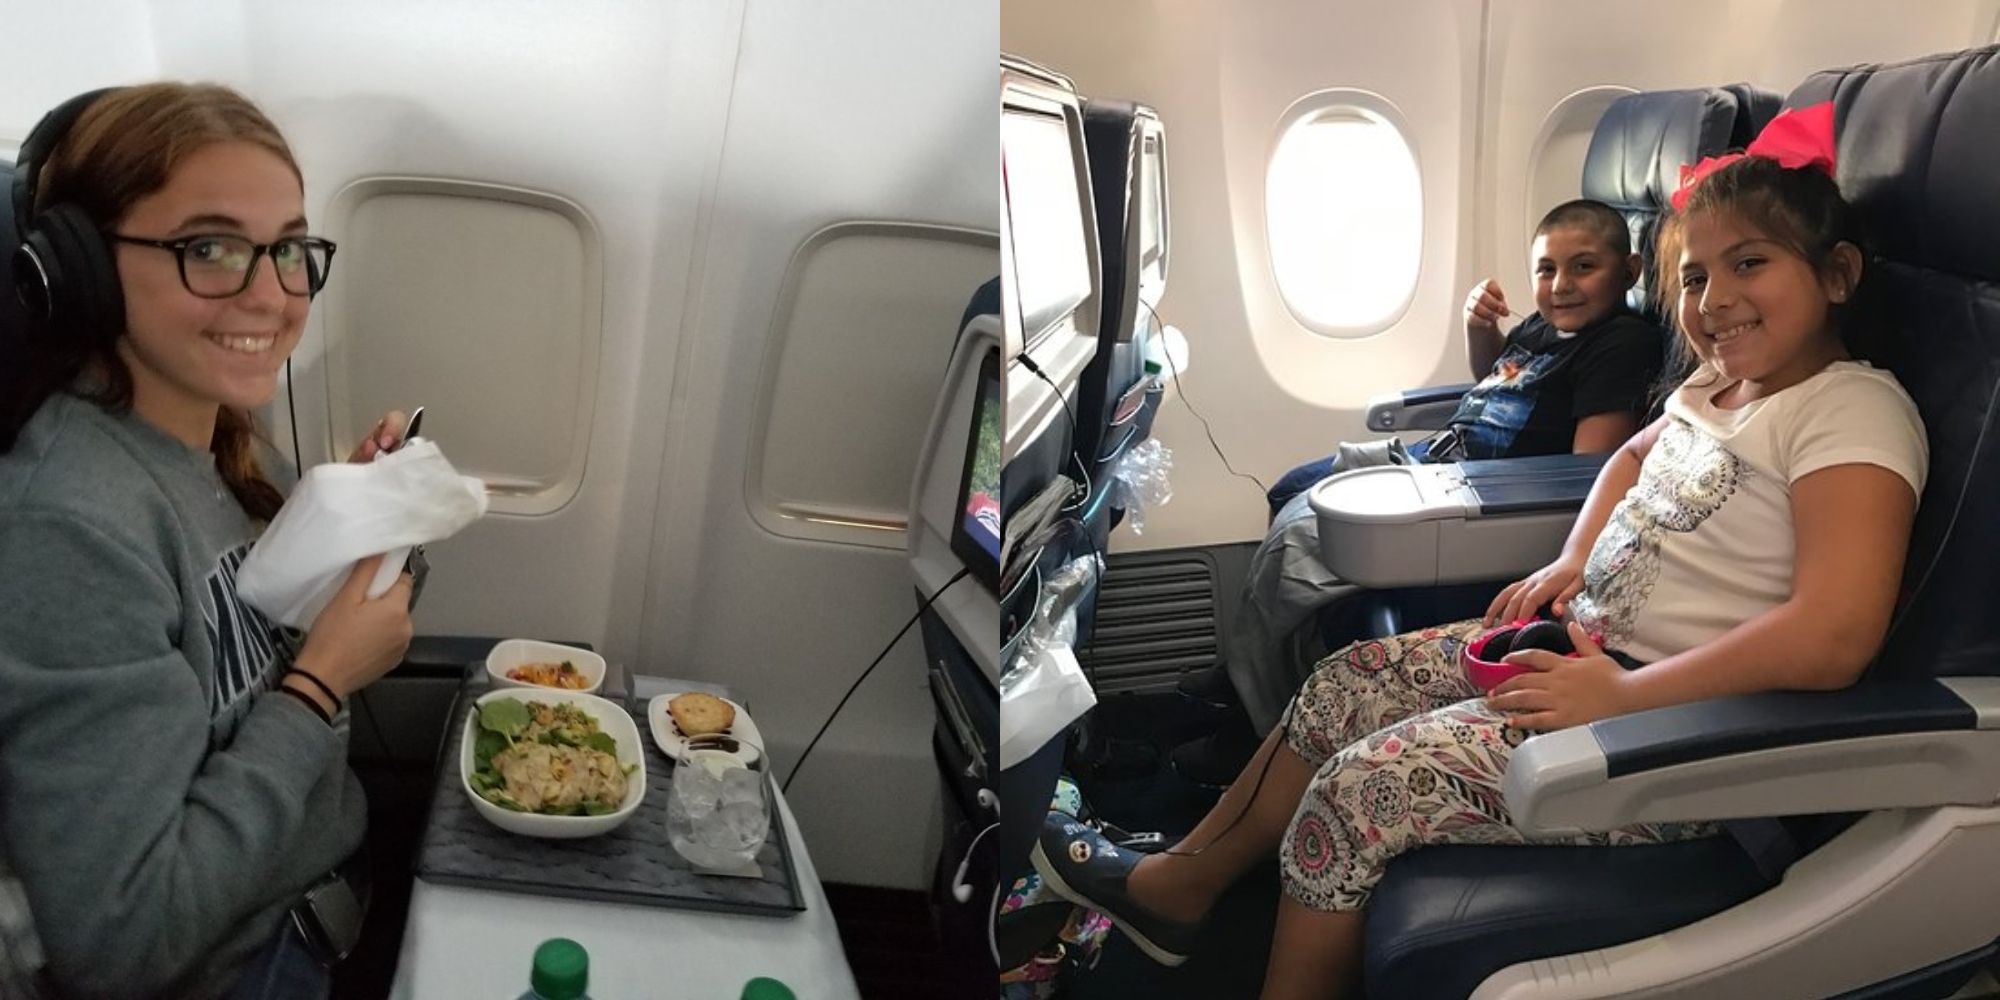 menina sentada no avião com fones de ouvido na comida na mesa da bandeja e duas crianças sentadas em assentos de avião